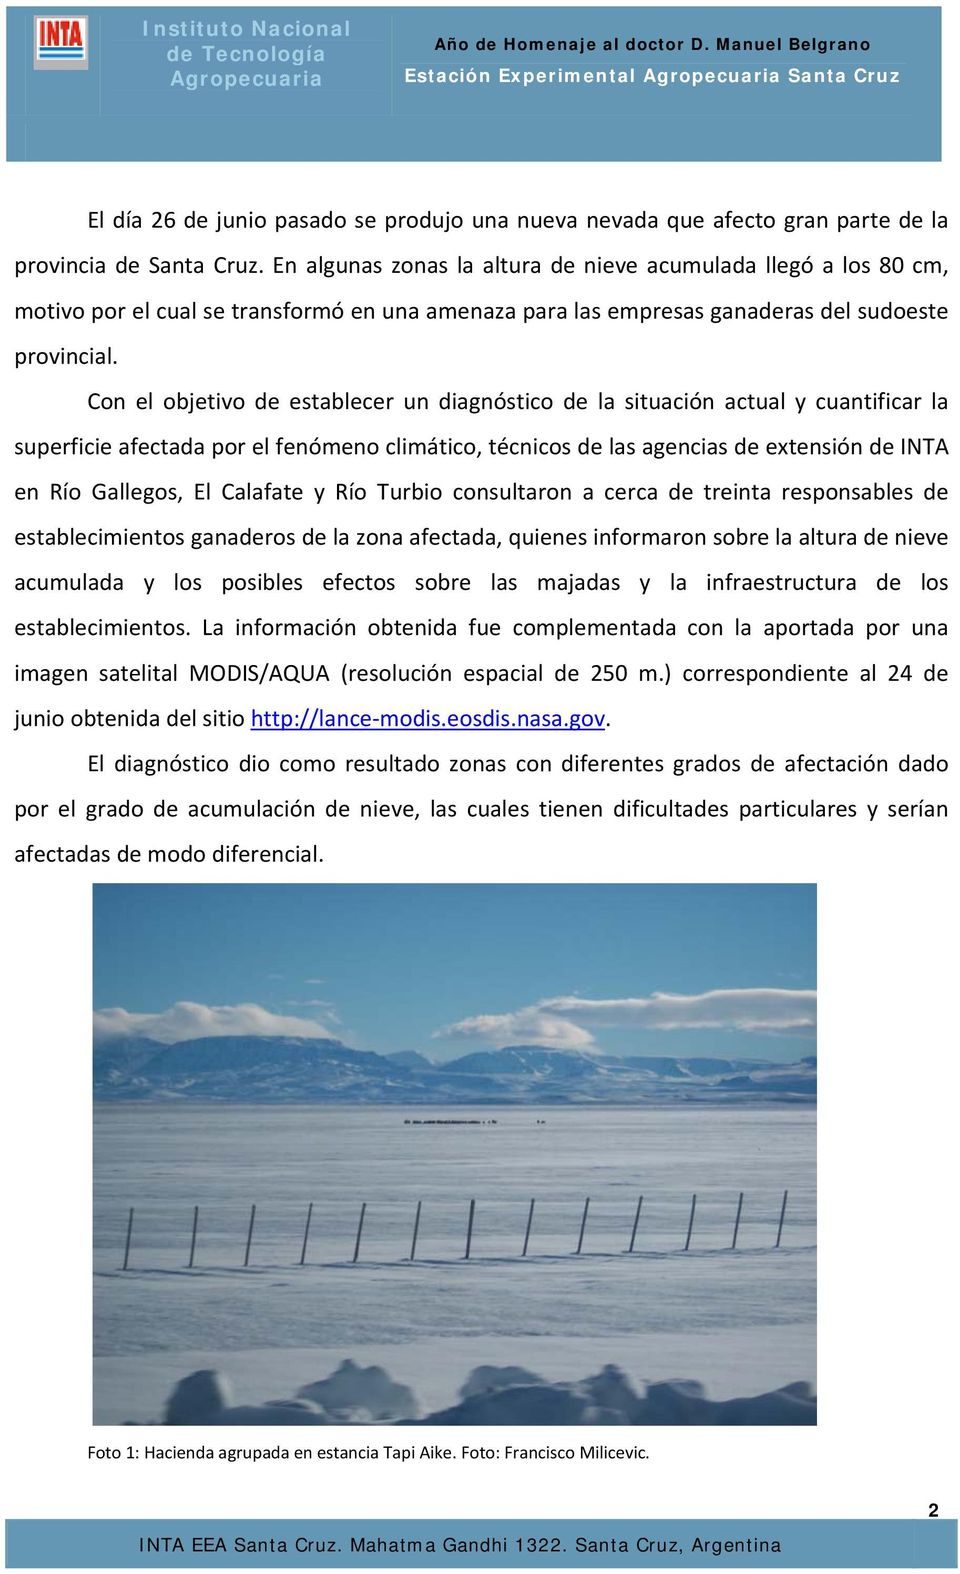 Con el objetivo de establecer un diagnóstico de la situación actual y cuantificar la superficie afectada por el fenómeno climático, técnicos de las agencias de extensión de INTA en Río Gallegos, El